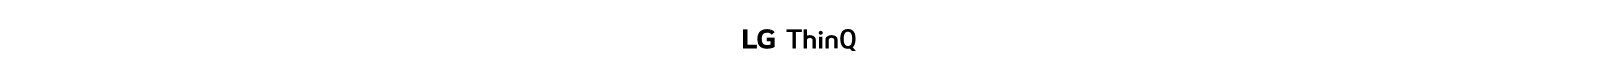 הלוגו של LG ThinQ